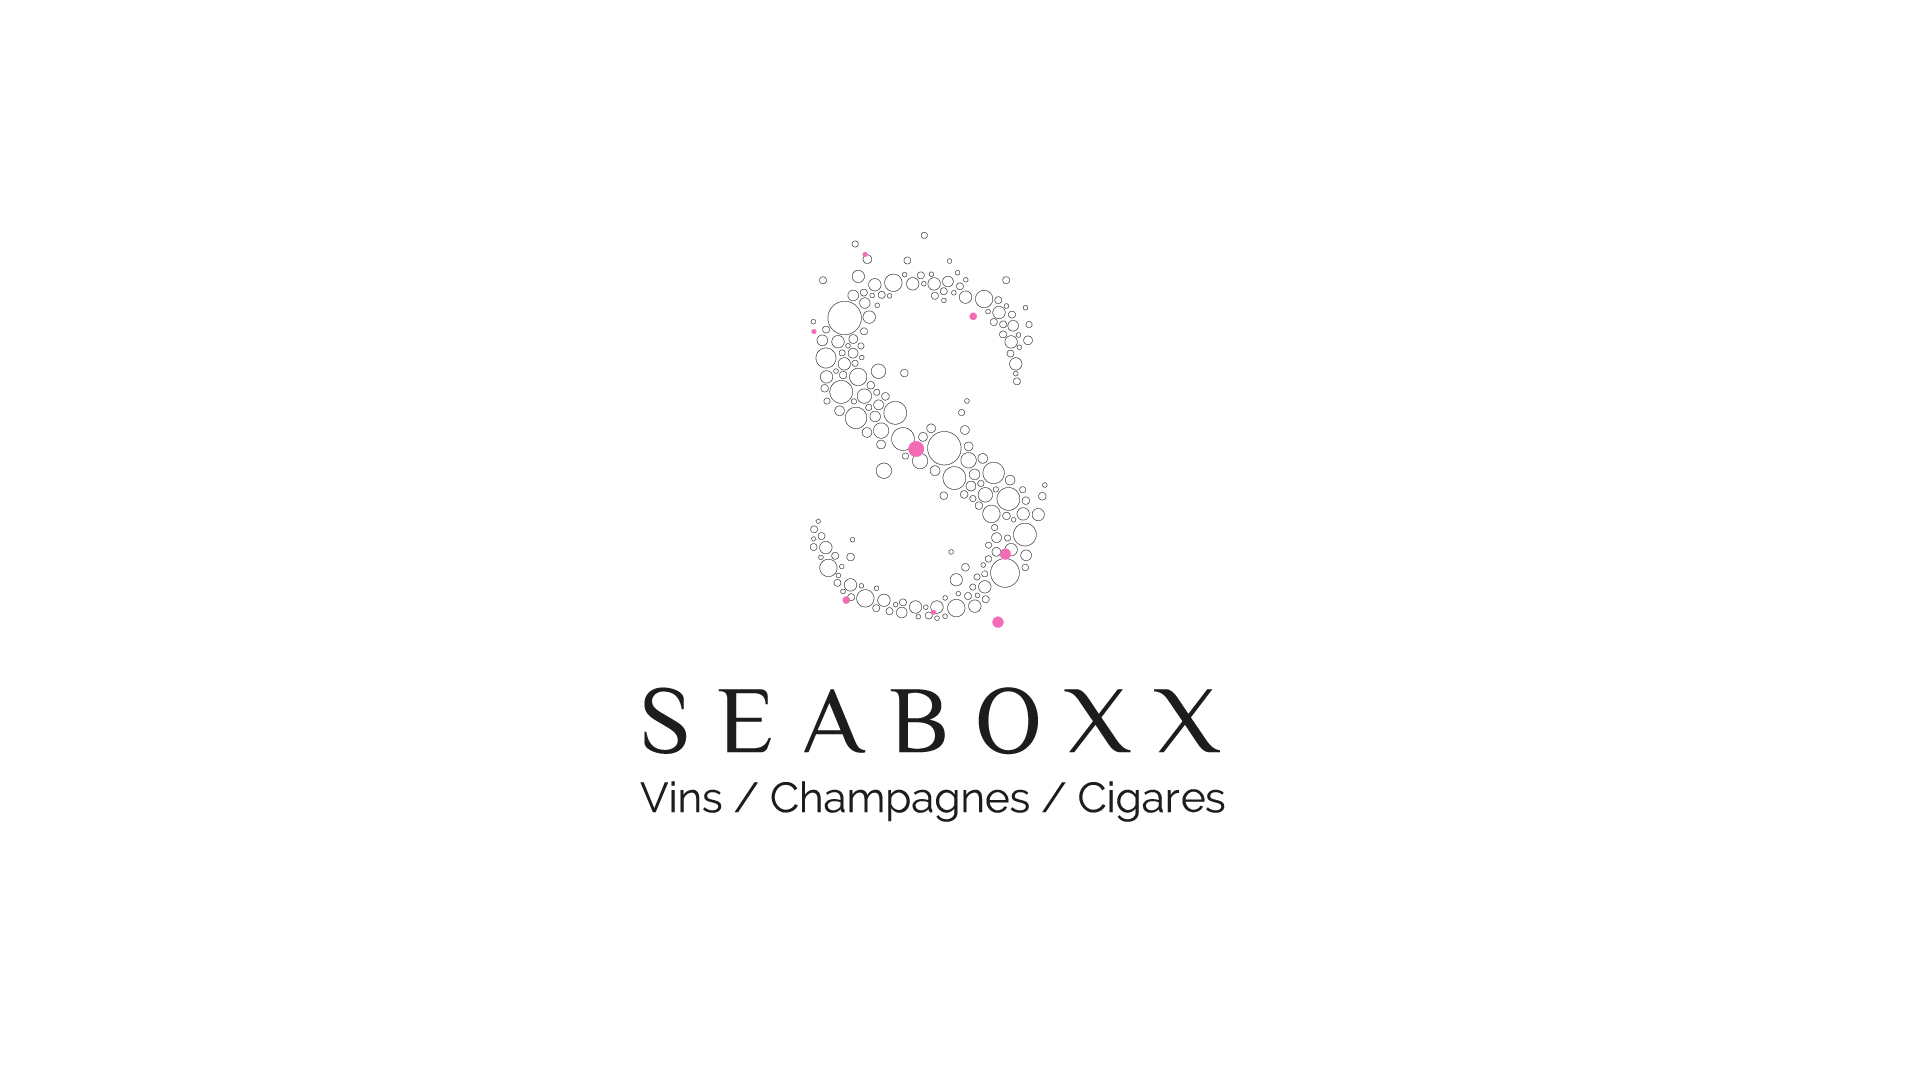 Seaboxx